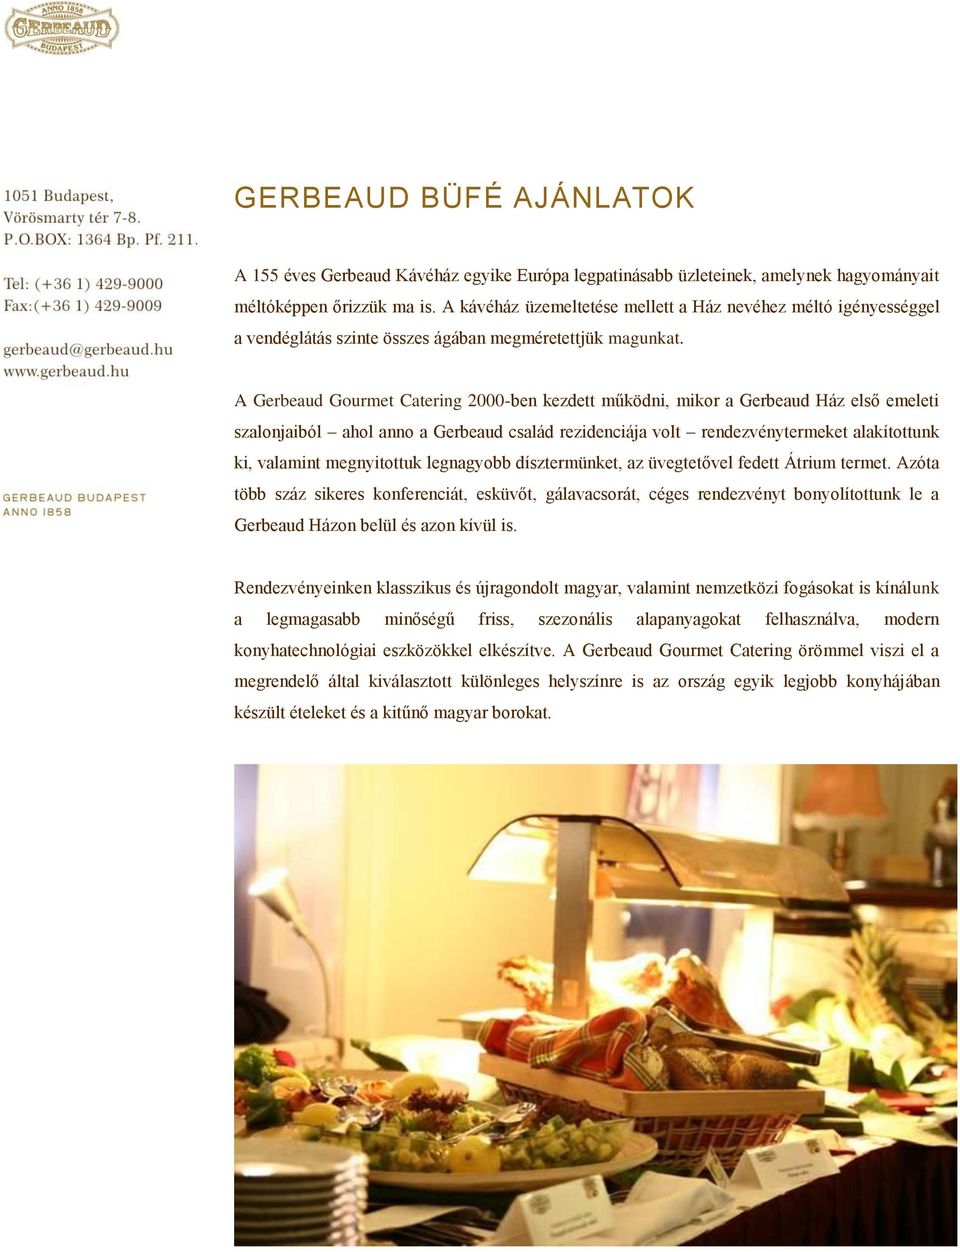 A Gerbeaud Gourmet Catering 2000-ben kezdett működni, mikor a Gerbeaud Ház első emeleti szalonjaiból ahol anno a Gerbeaud család rezidenciája volt rendezvénytermeket alakítottunk ki, valamint